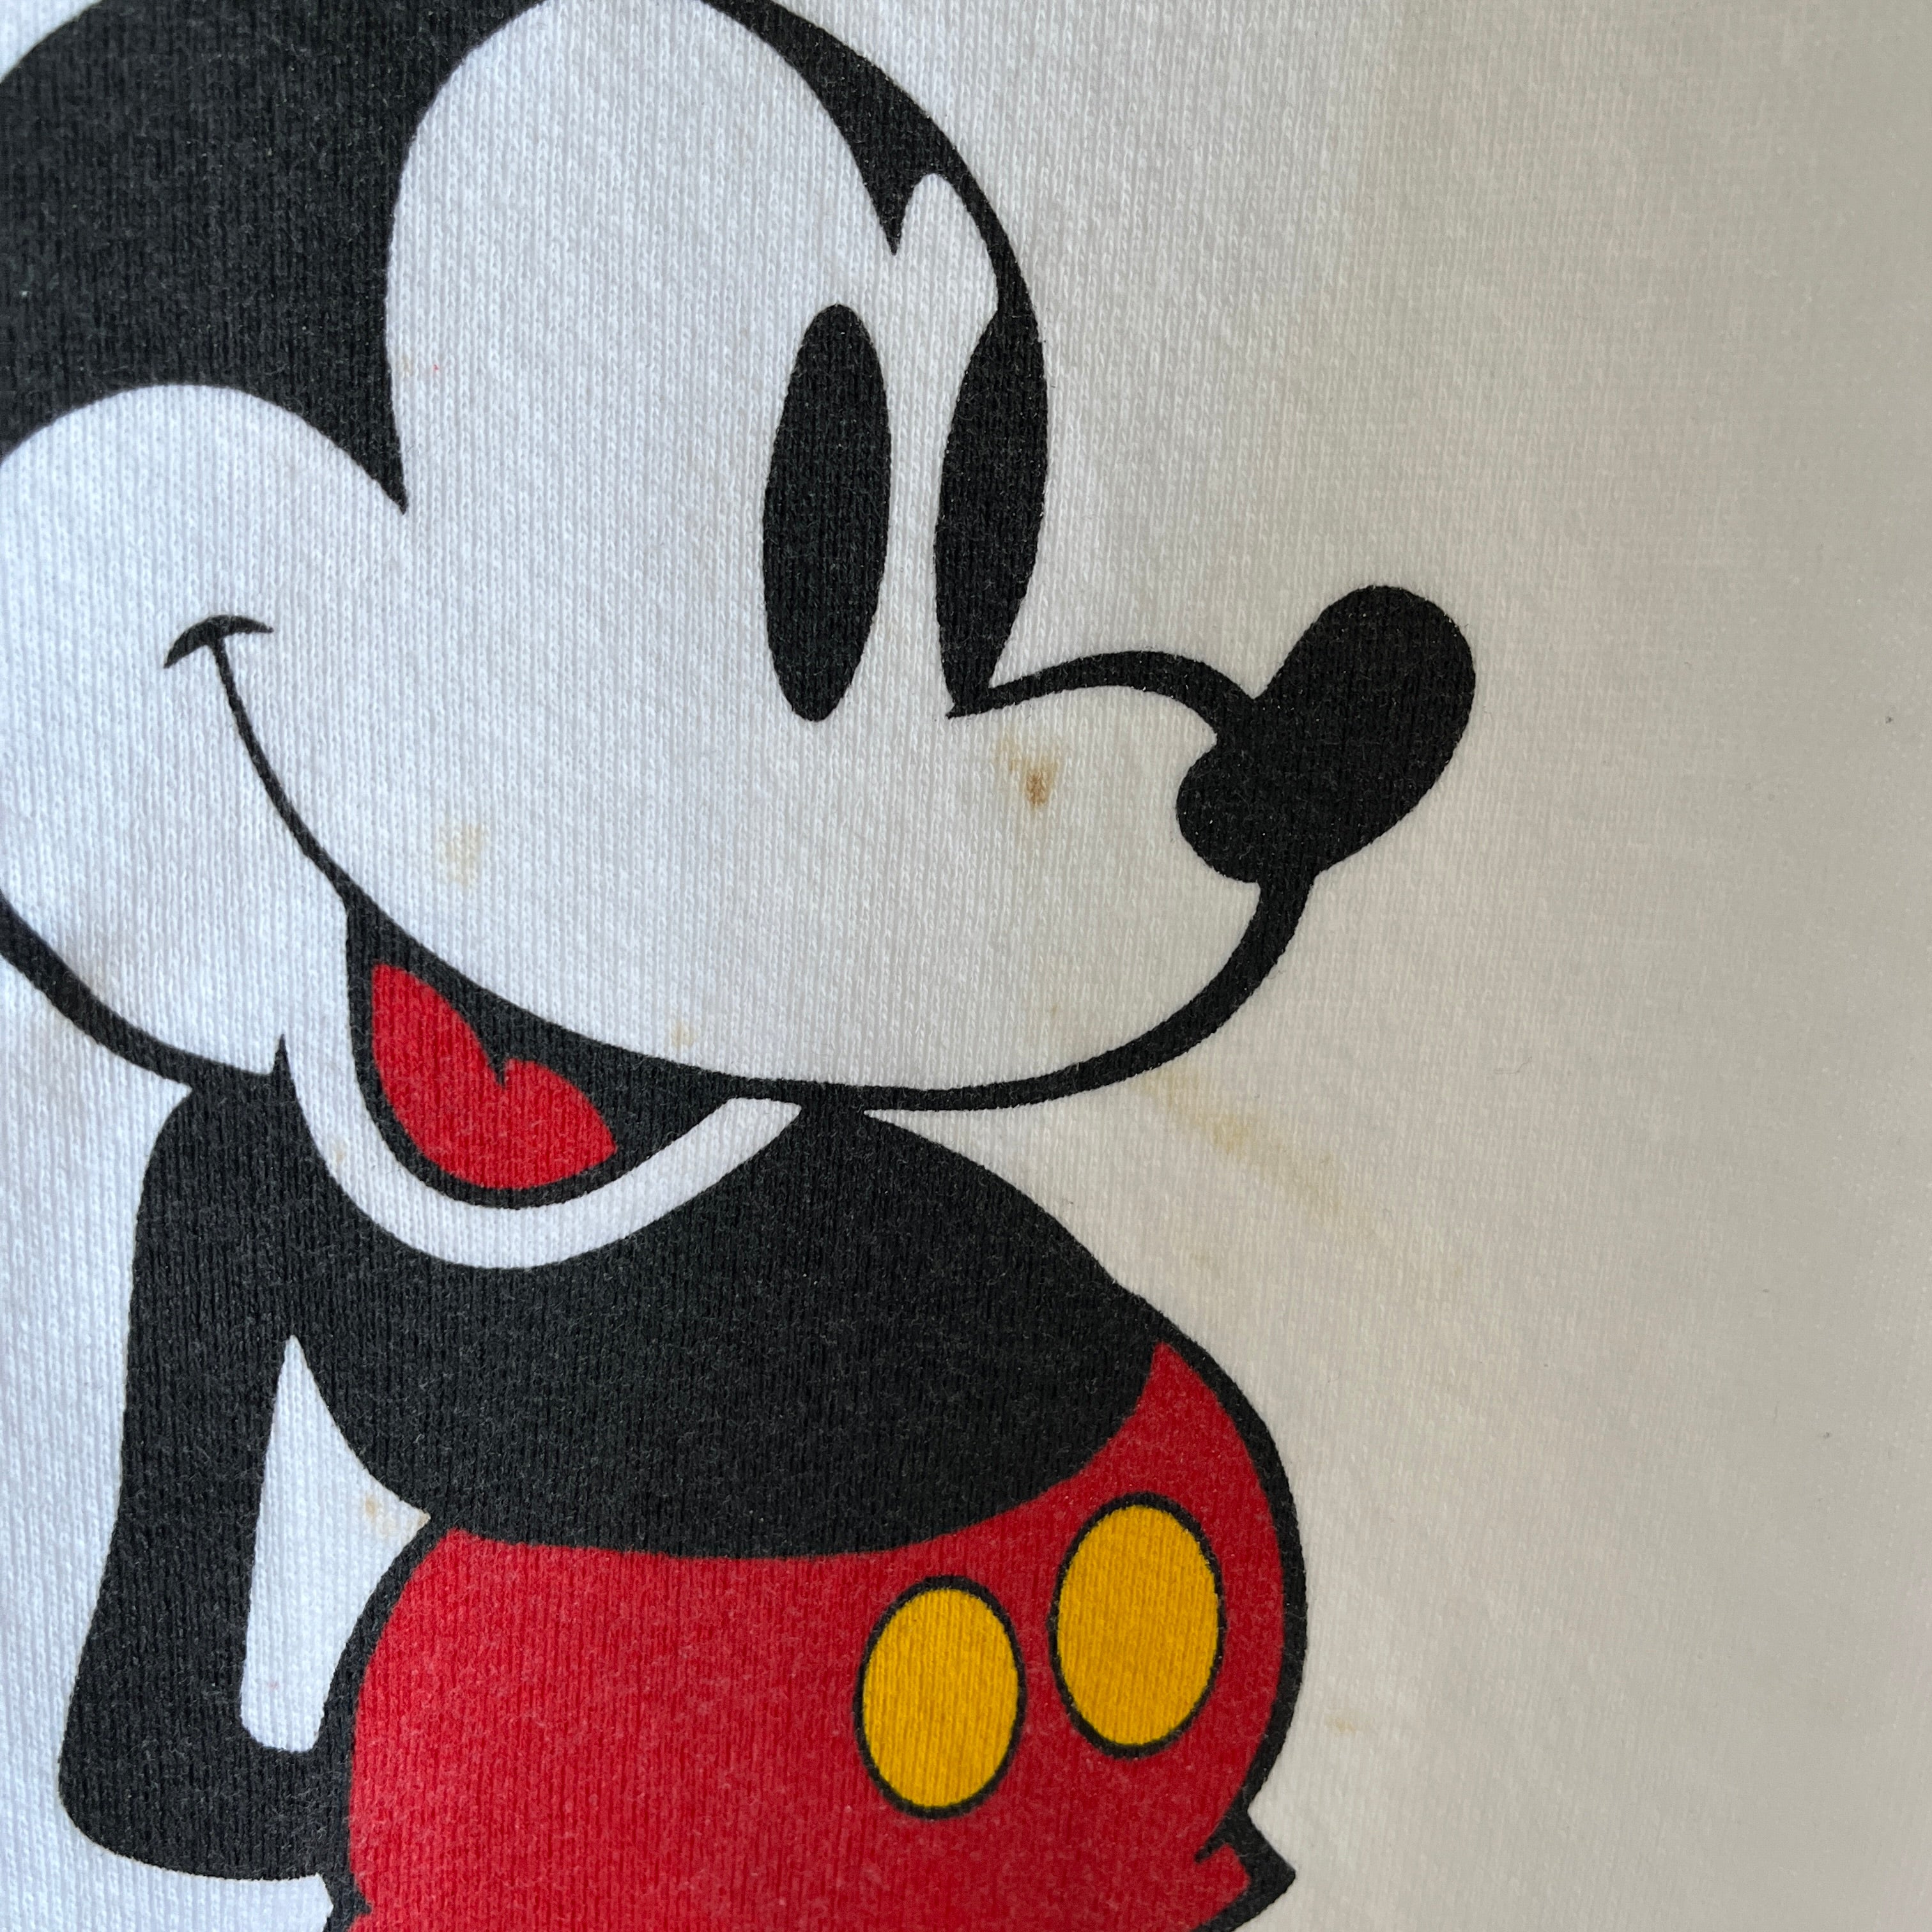 Sweat-shirt Mickey Mouse à peine usé des années 1970 avec col et poignets contrastés - WOW !